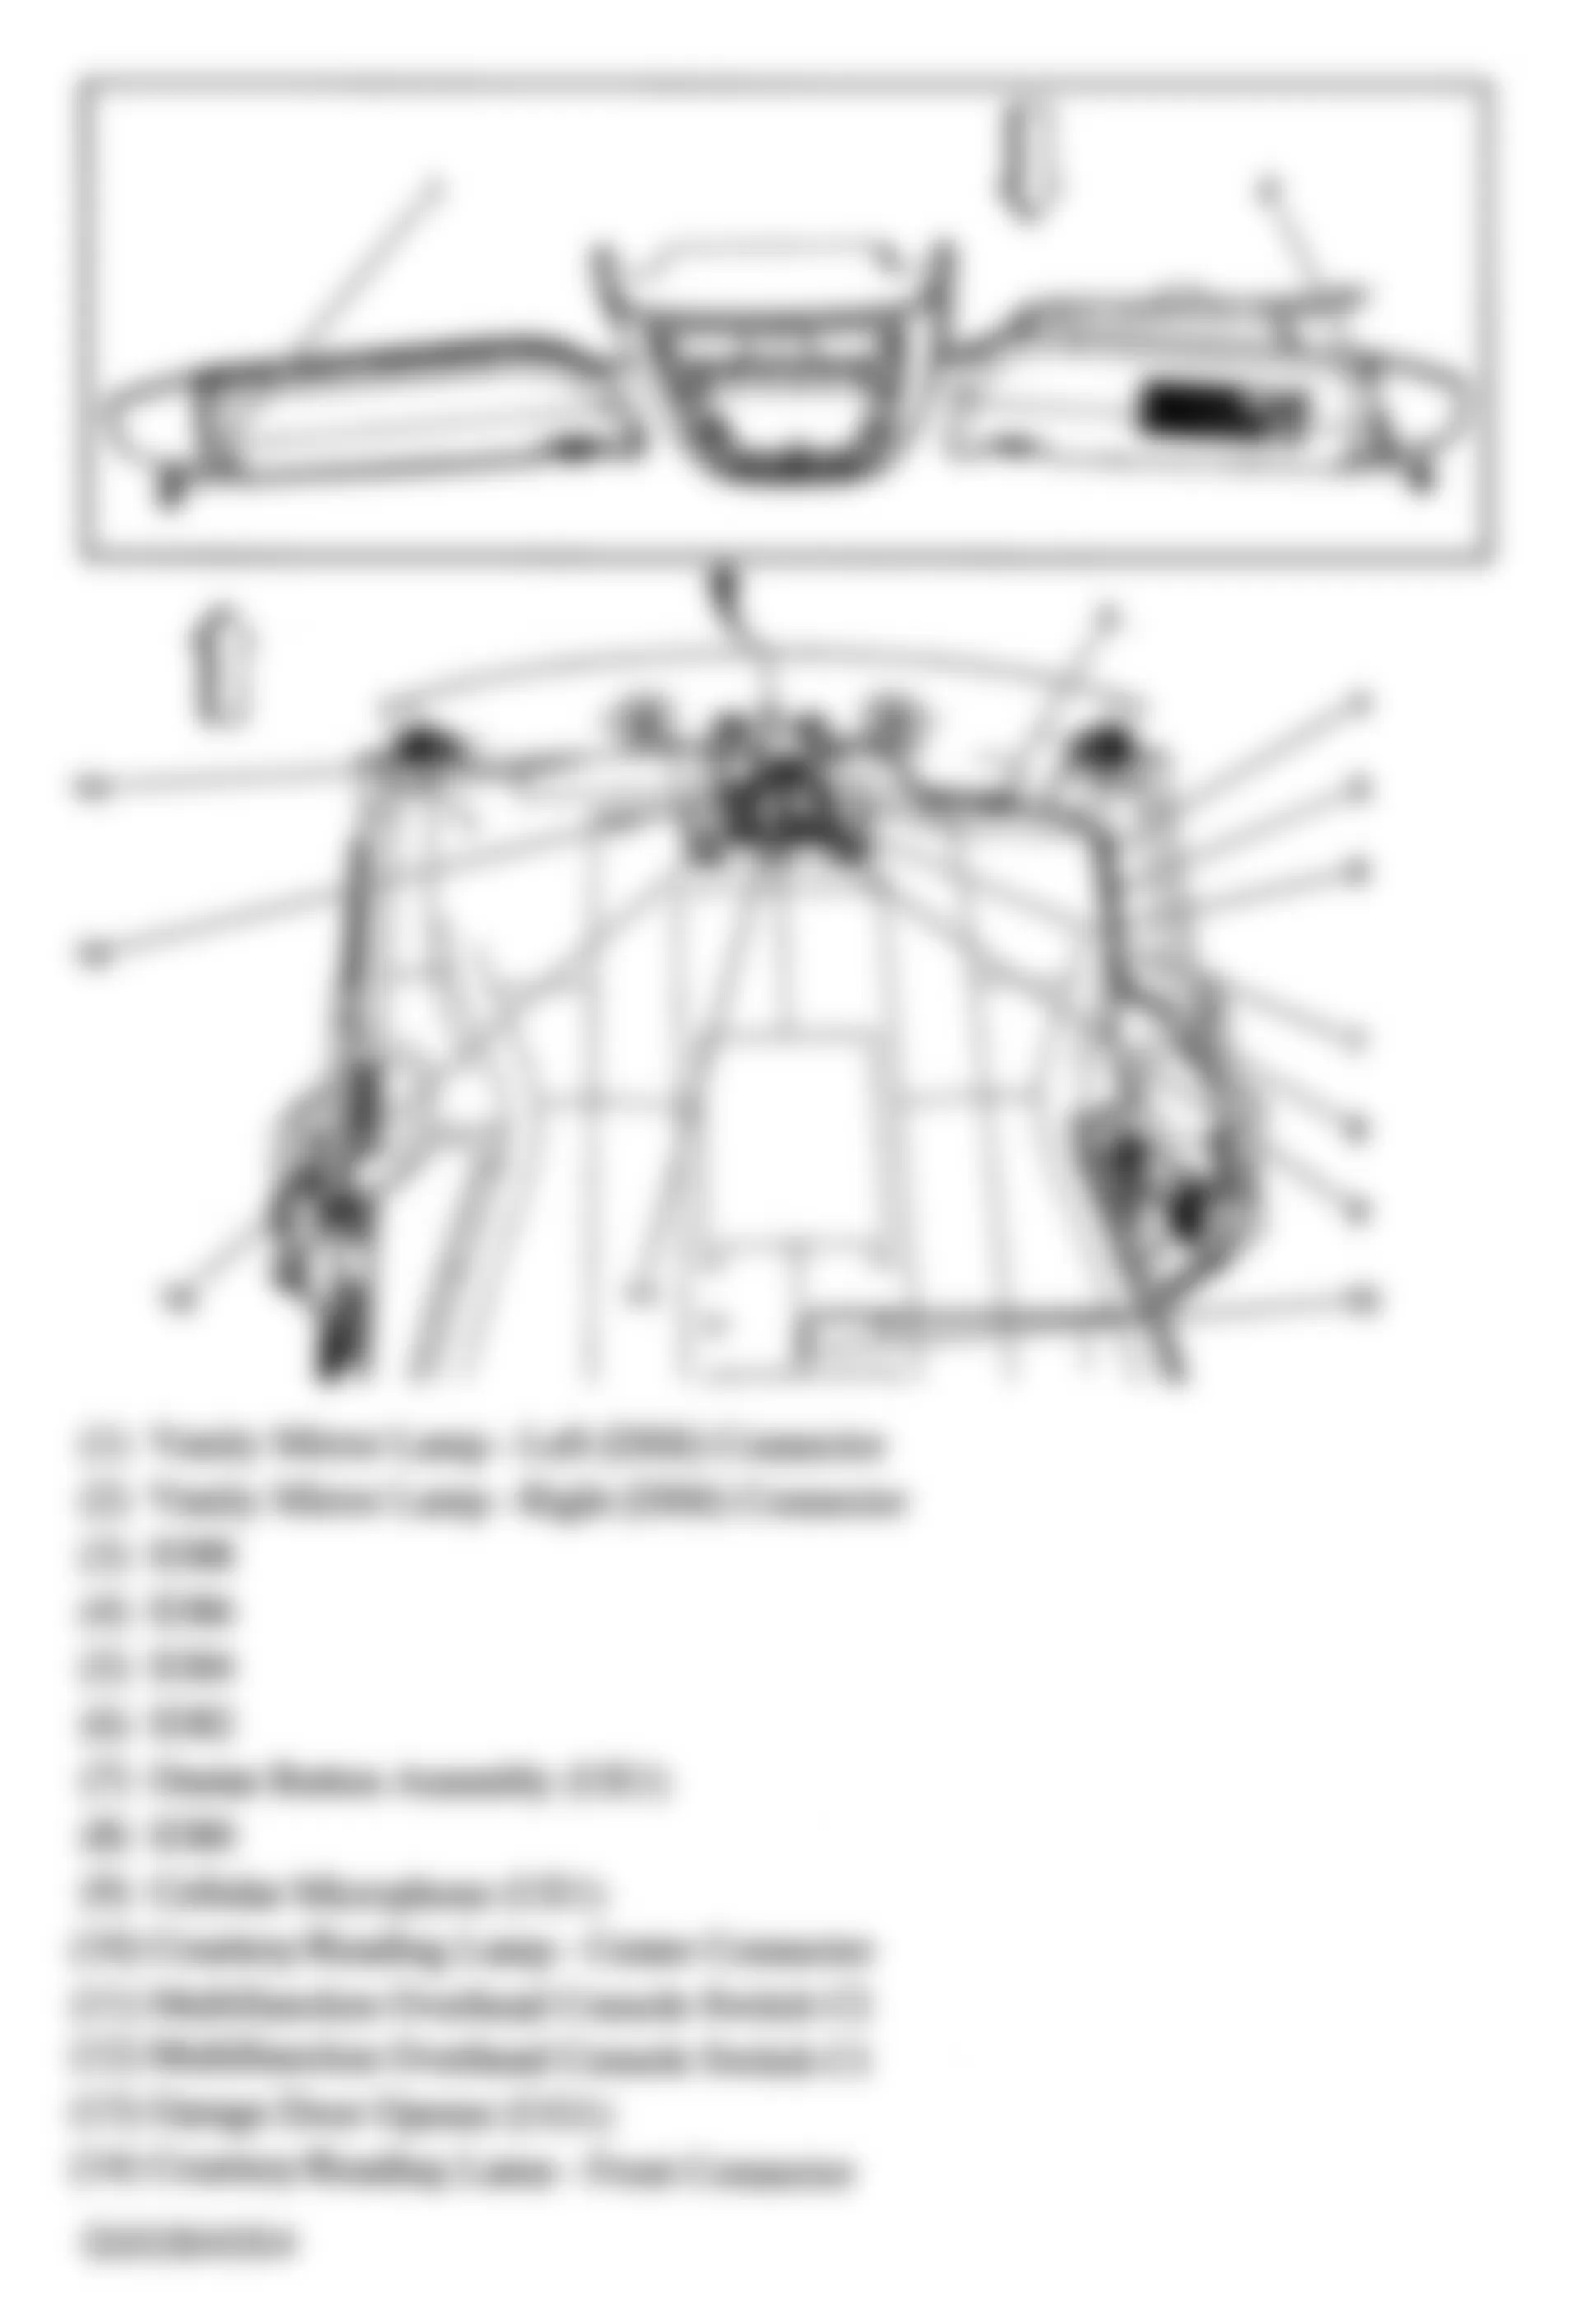 Buick Terraza CXL 2005 - Component Locations -  Headliner Harness Components